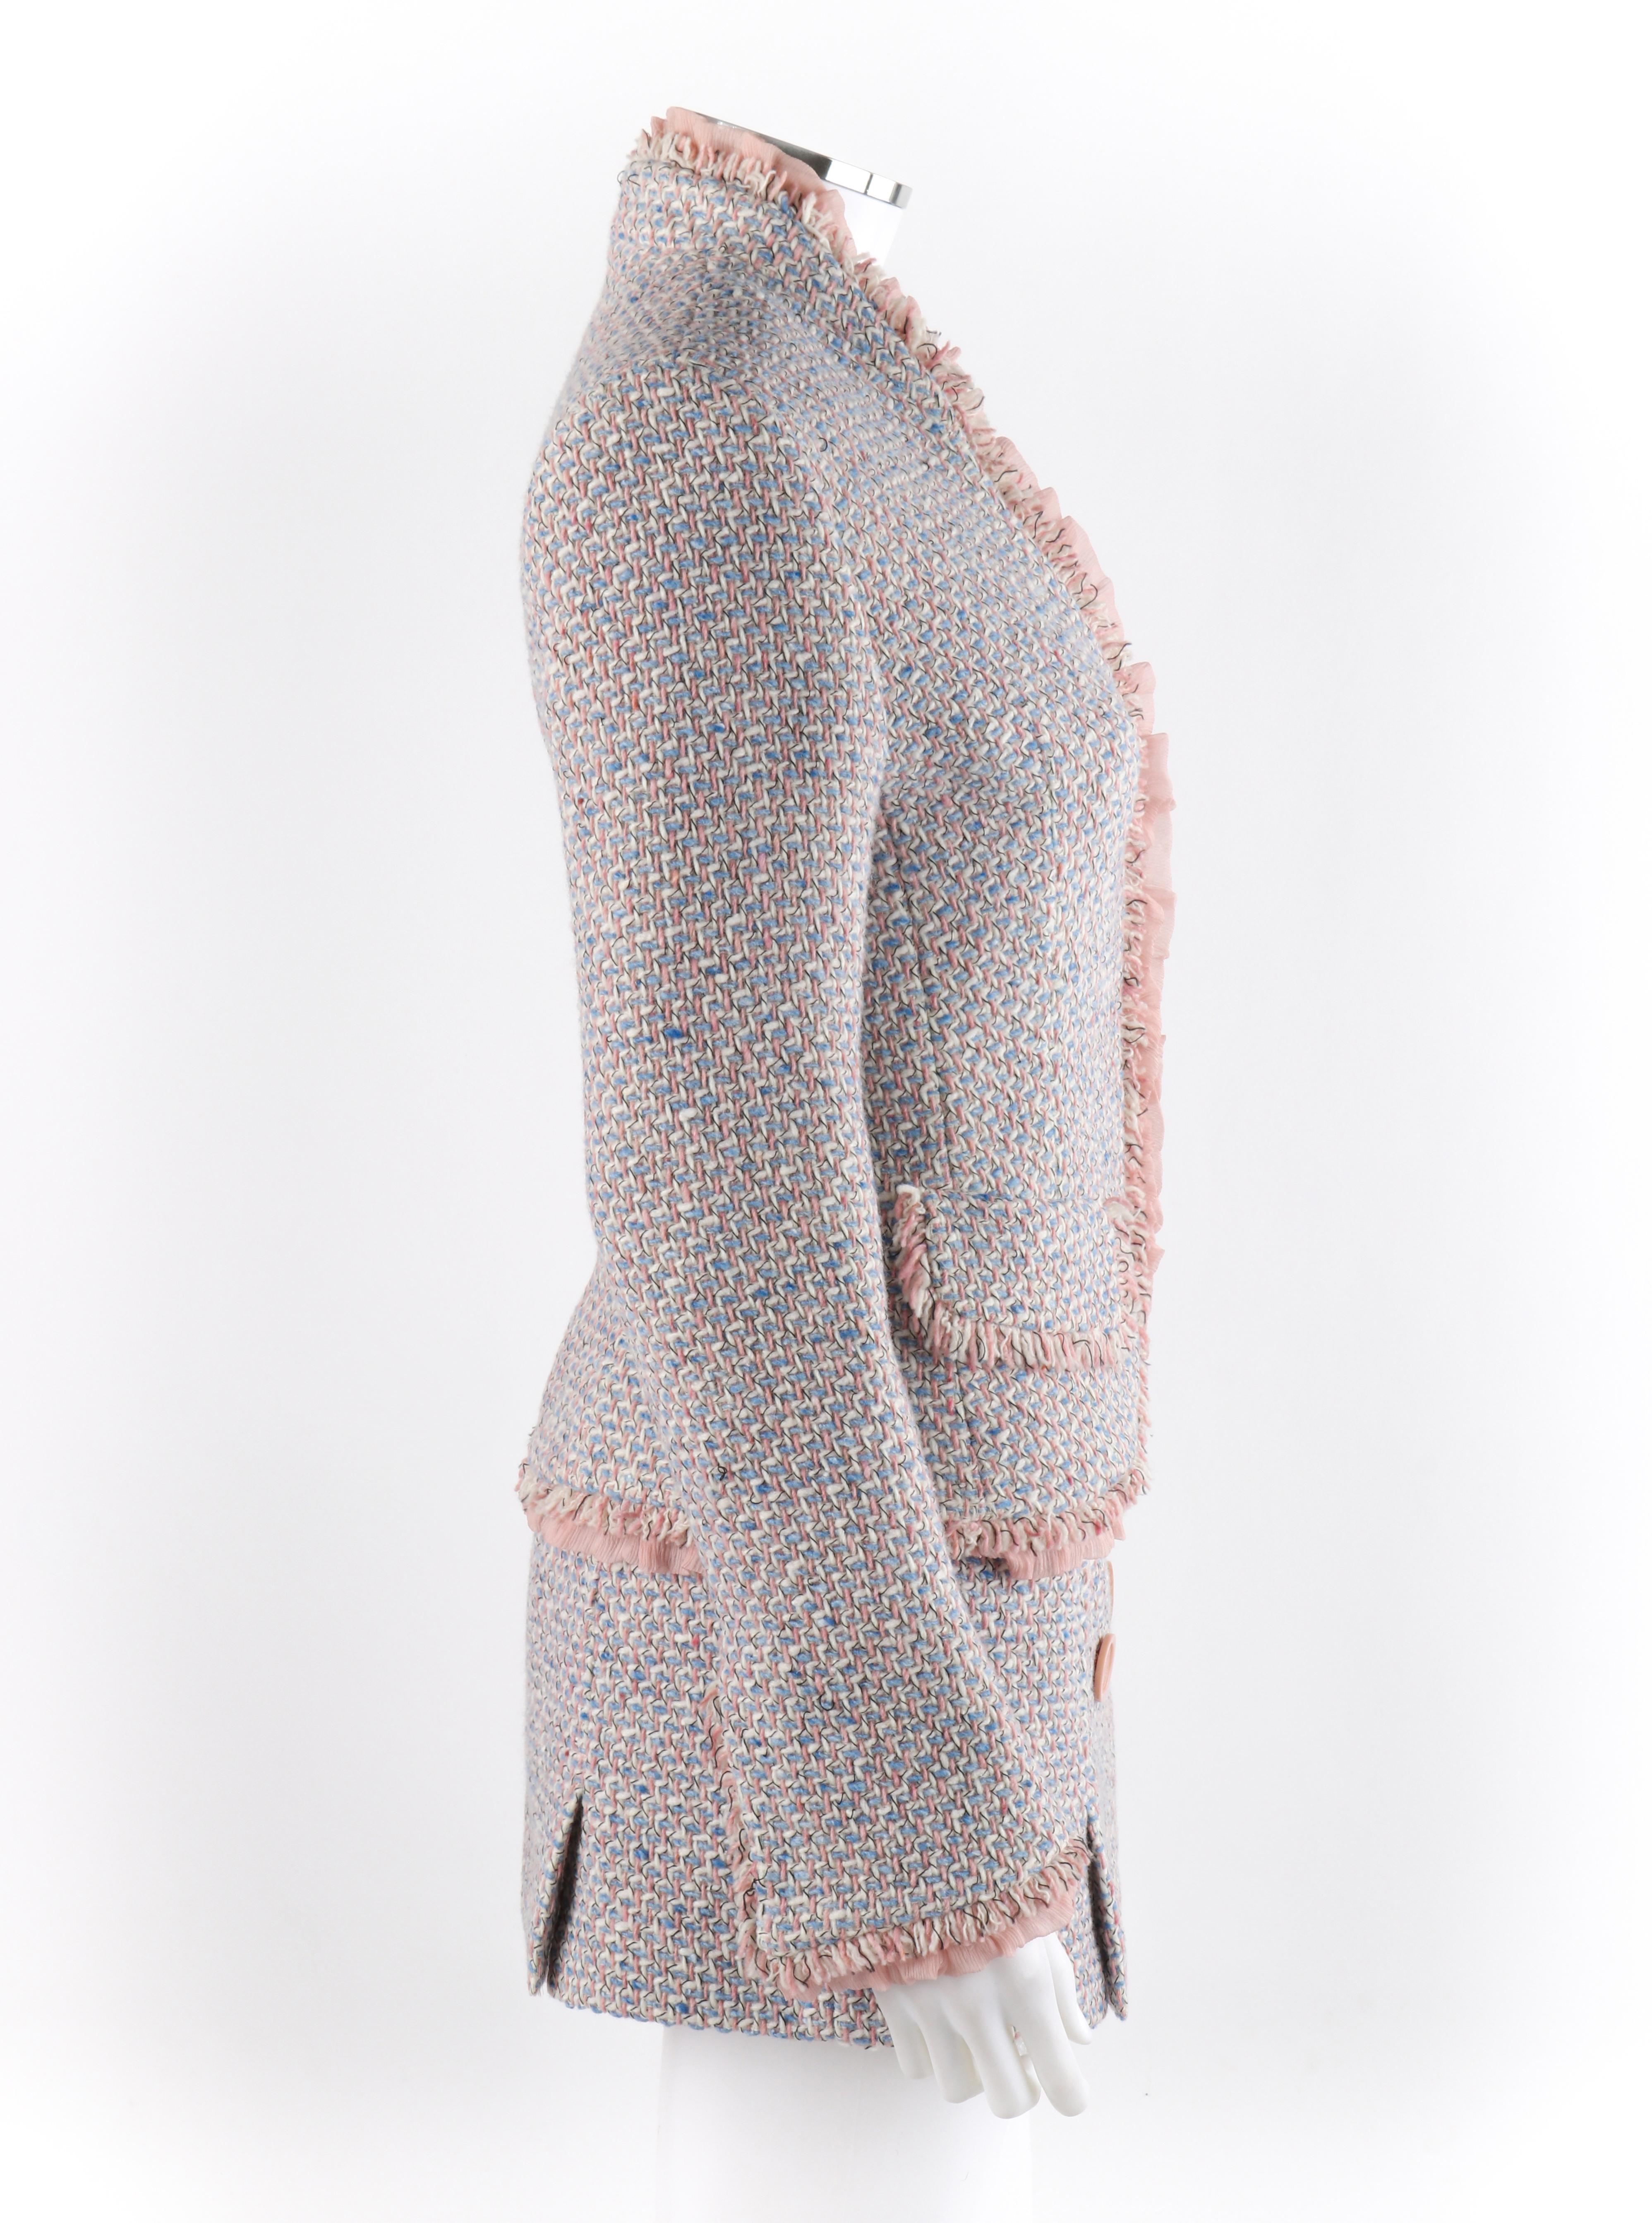 Gris ALEXANDER McQUEEN Ensemble blazer et mini-jupe en tweed bouclé rose et bleu, vers 1996, neuf avec étiquette en vente